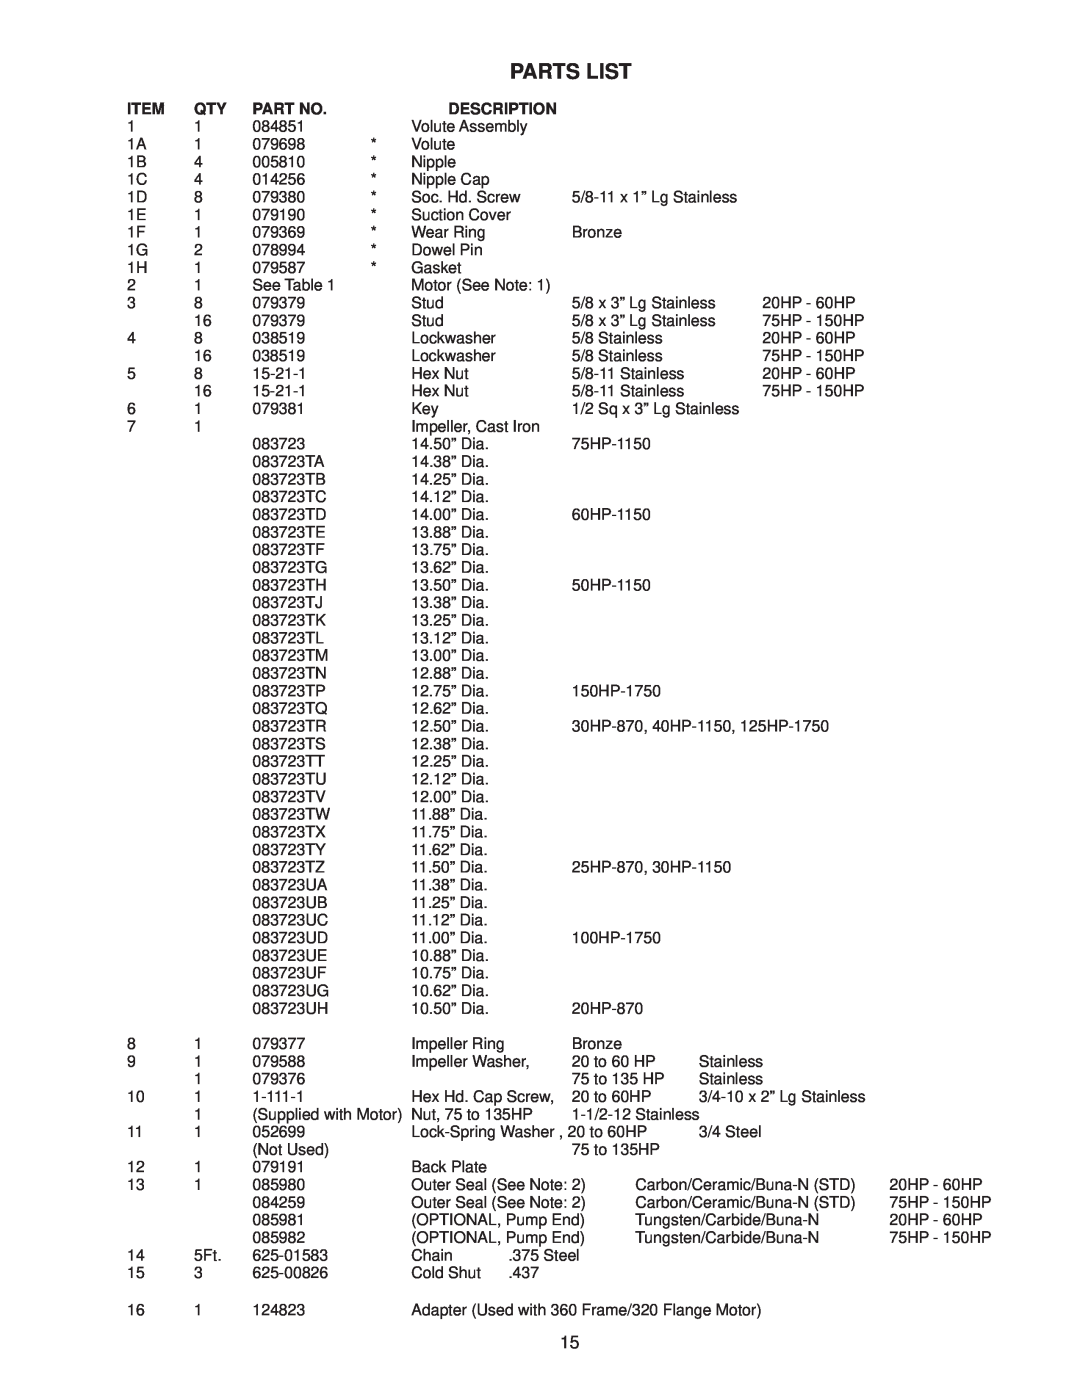 Crane Plumbing 8XSE-HA operation manual Parts List, Description 